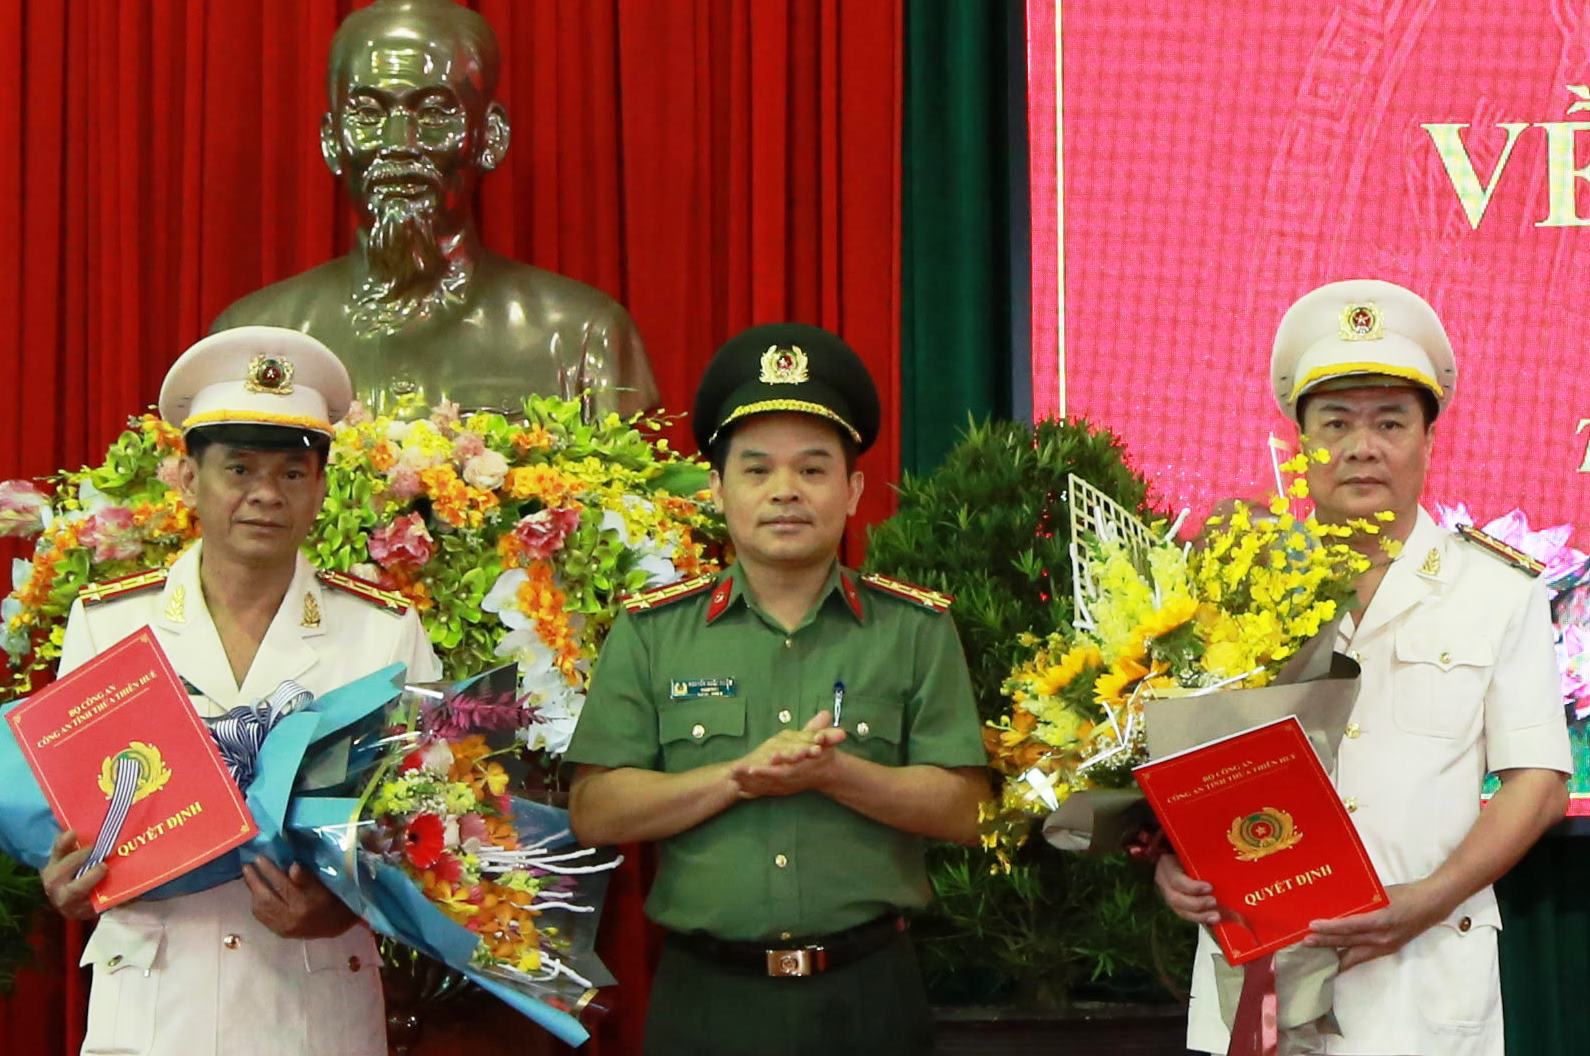 Đại tá Nguyễn Quốc Đoàn (giữa) được bầu chức phó bí thư Tỉnh ủy Thừa Thiên Huế - Ảnh: TRẦN HỒNG